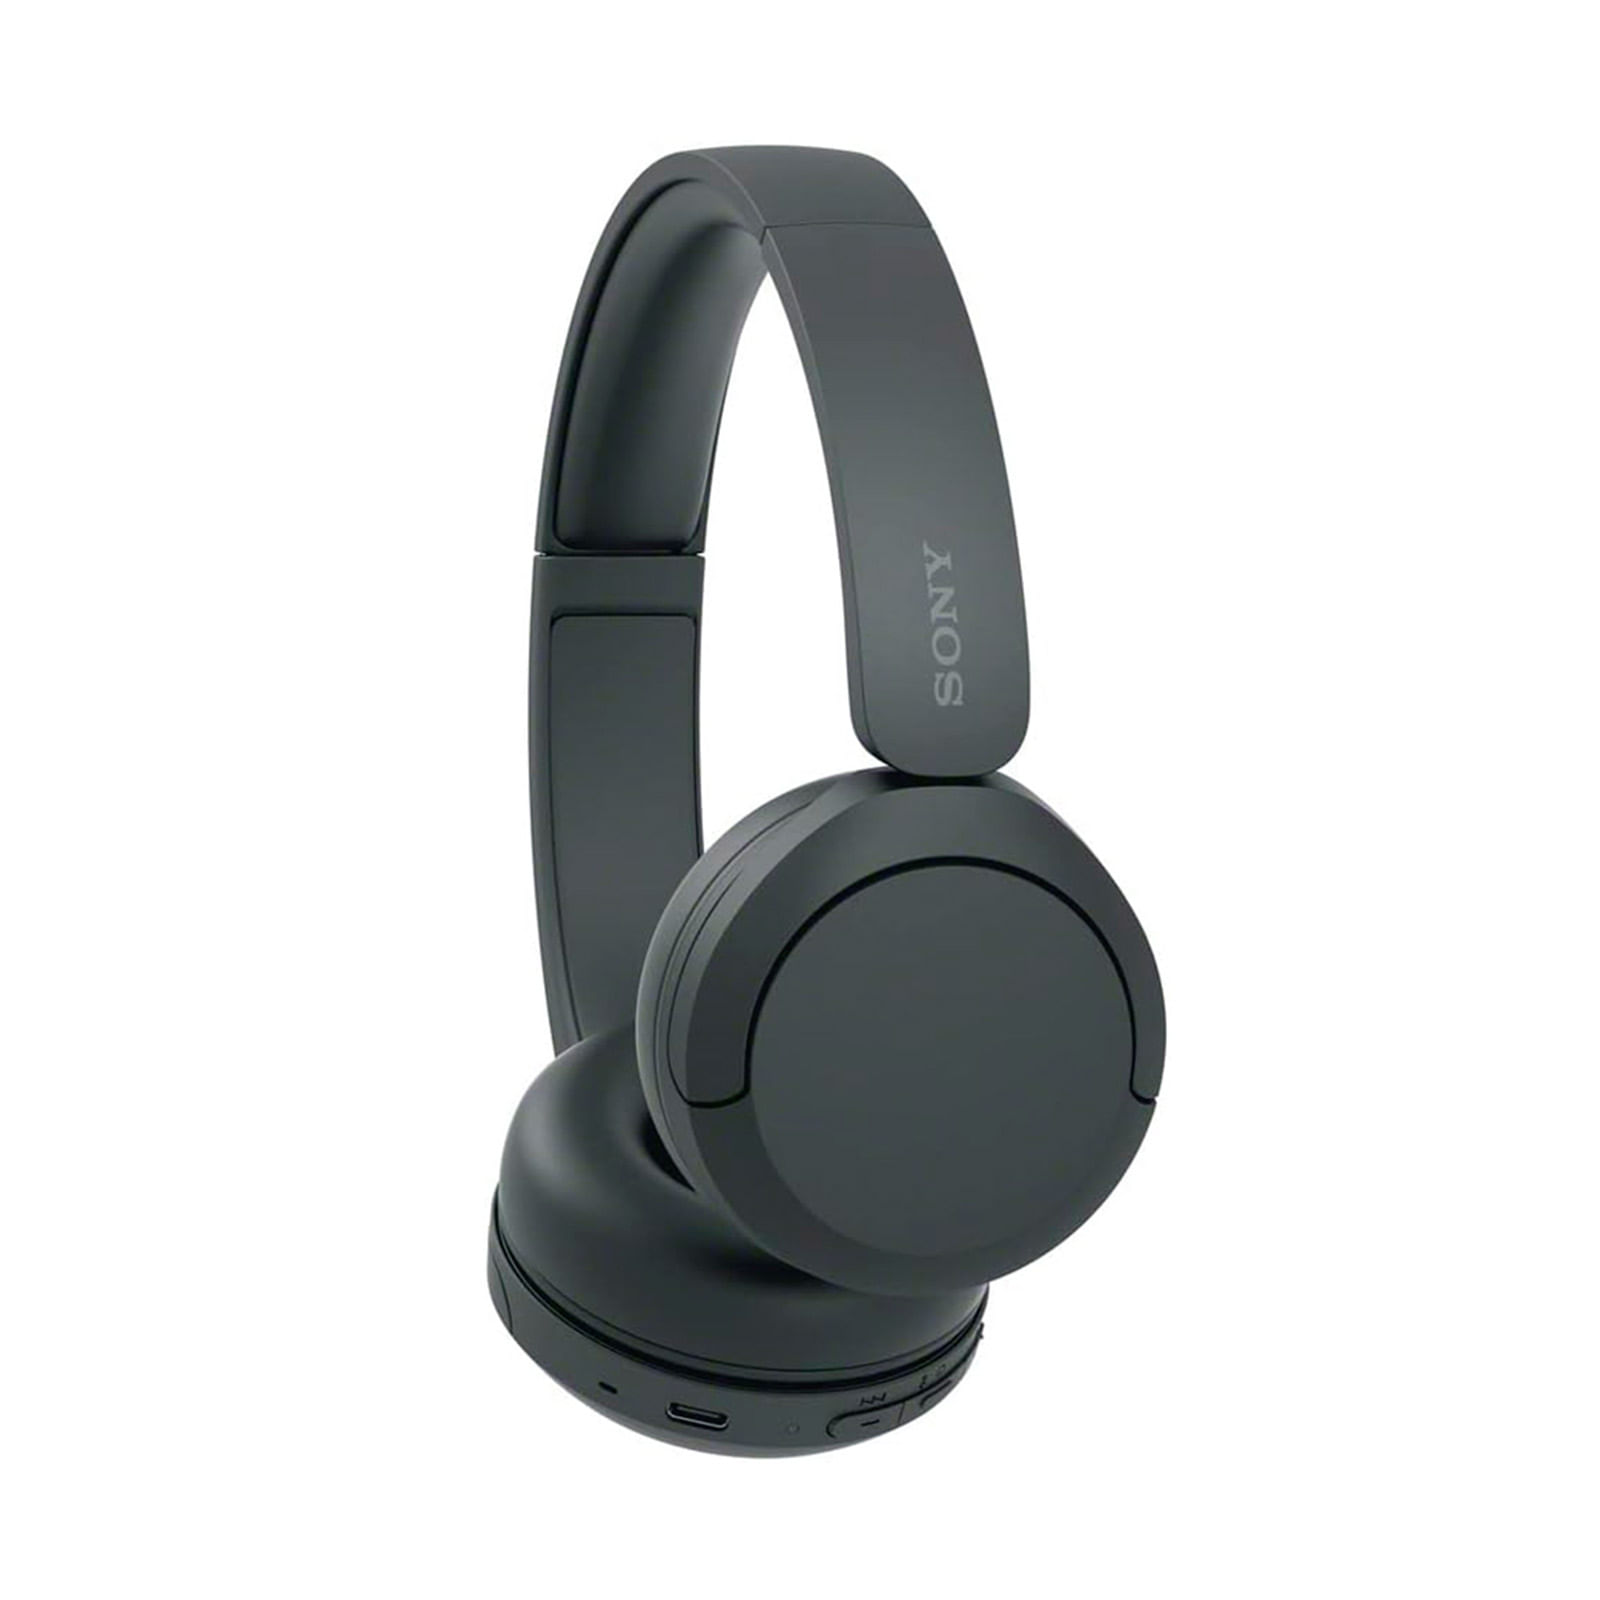 Los 4 auriculares inalámbricos con diadema de Sony para disfrutar